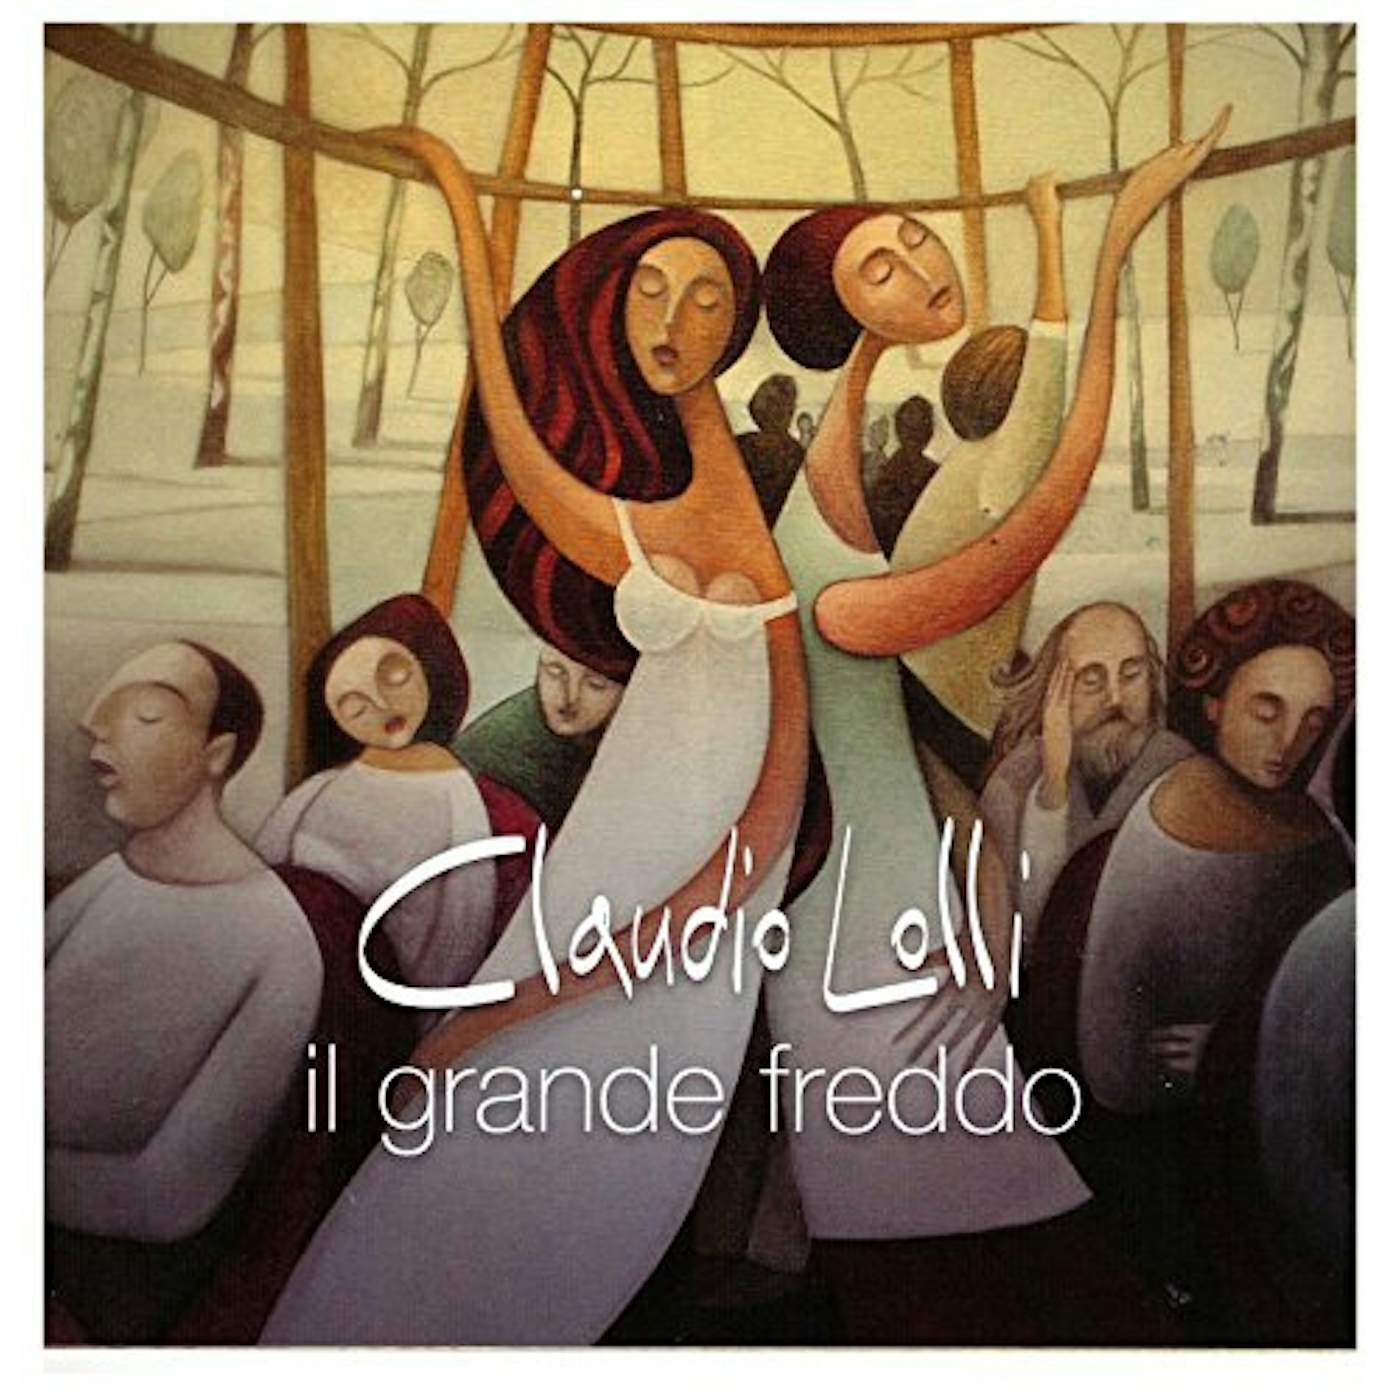 Claudio Lolli Il grande freddo Vinyl Record